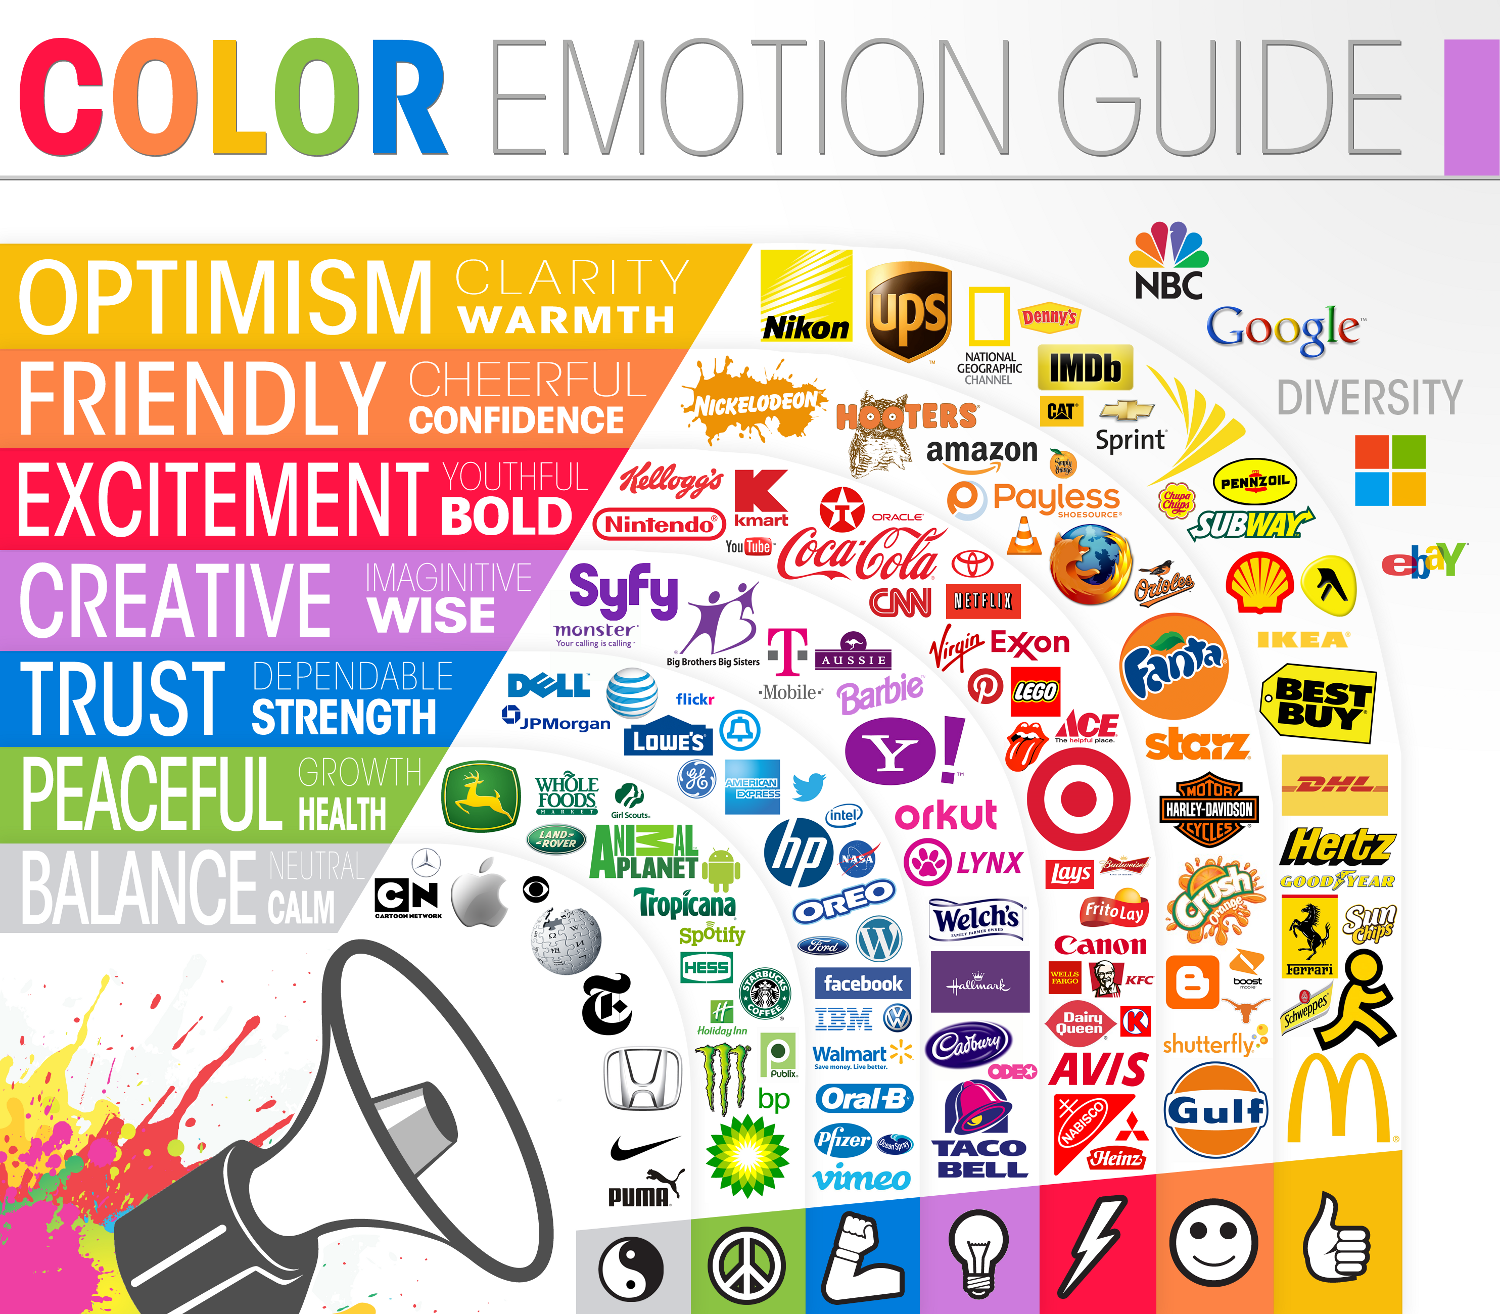 Color_Emotion_Guide.png